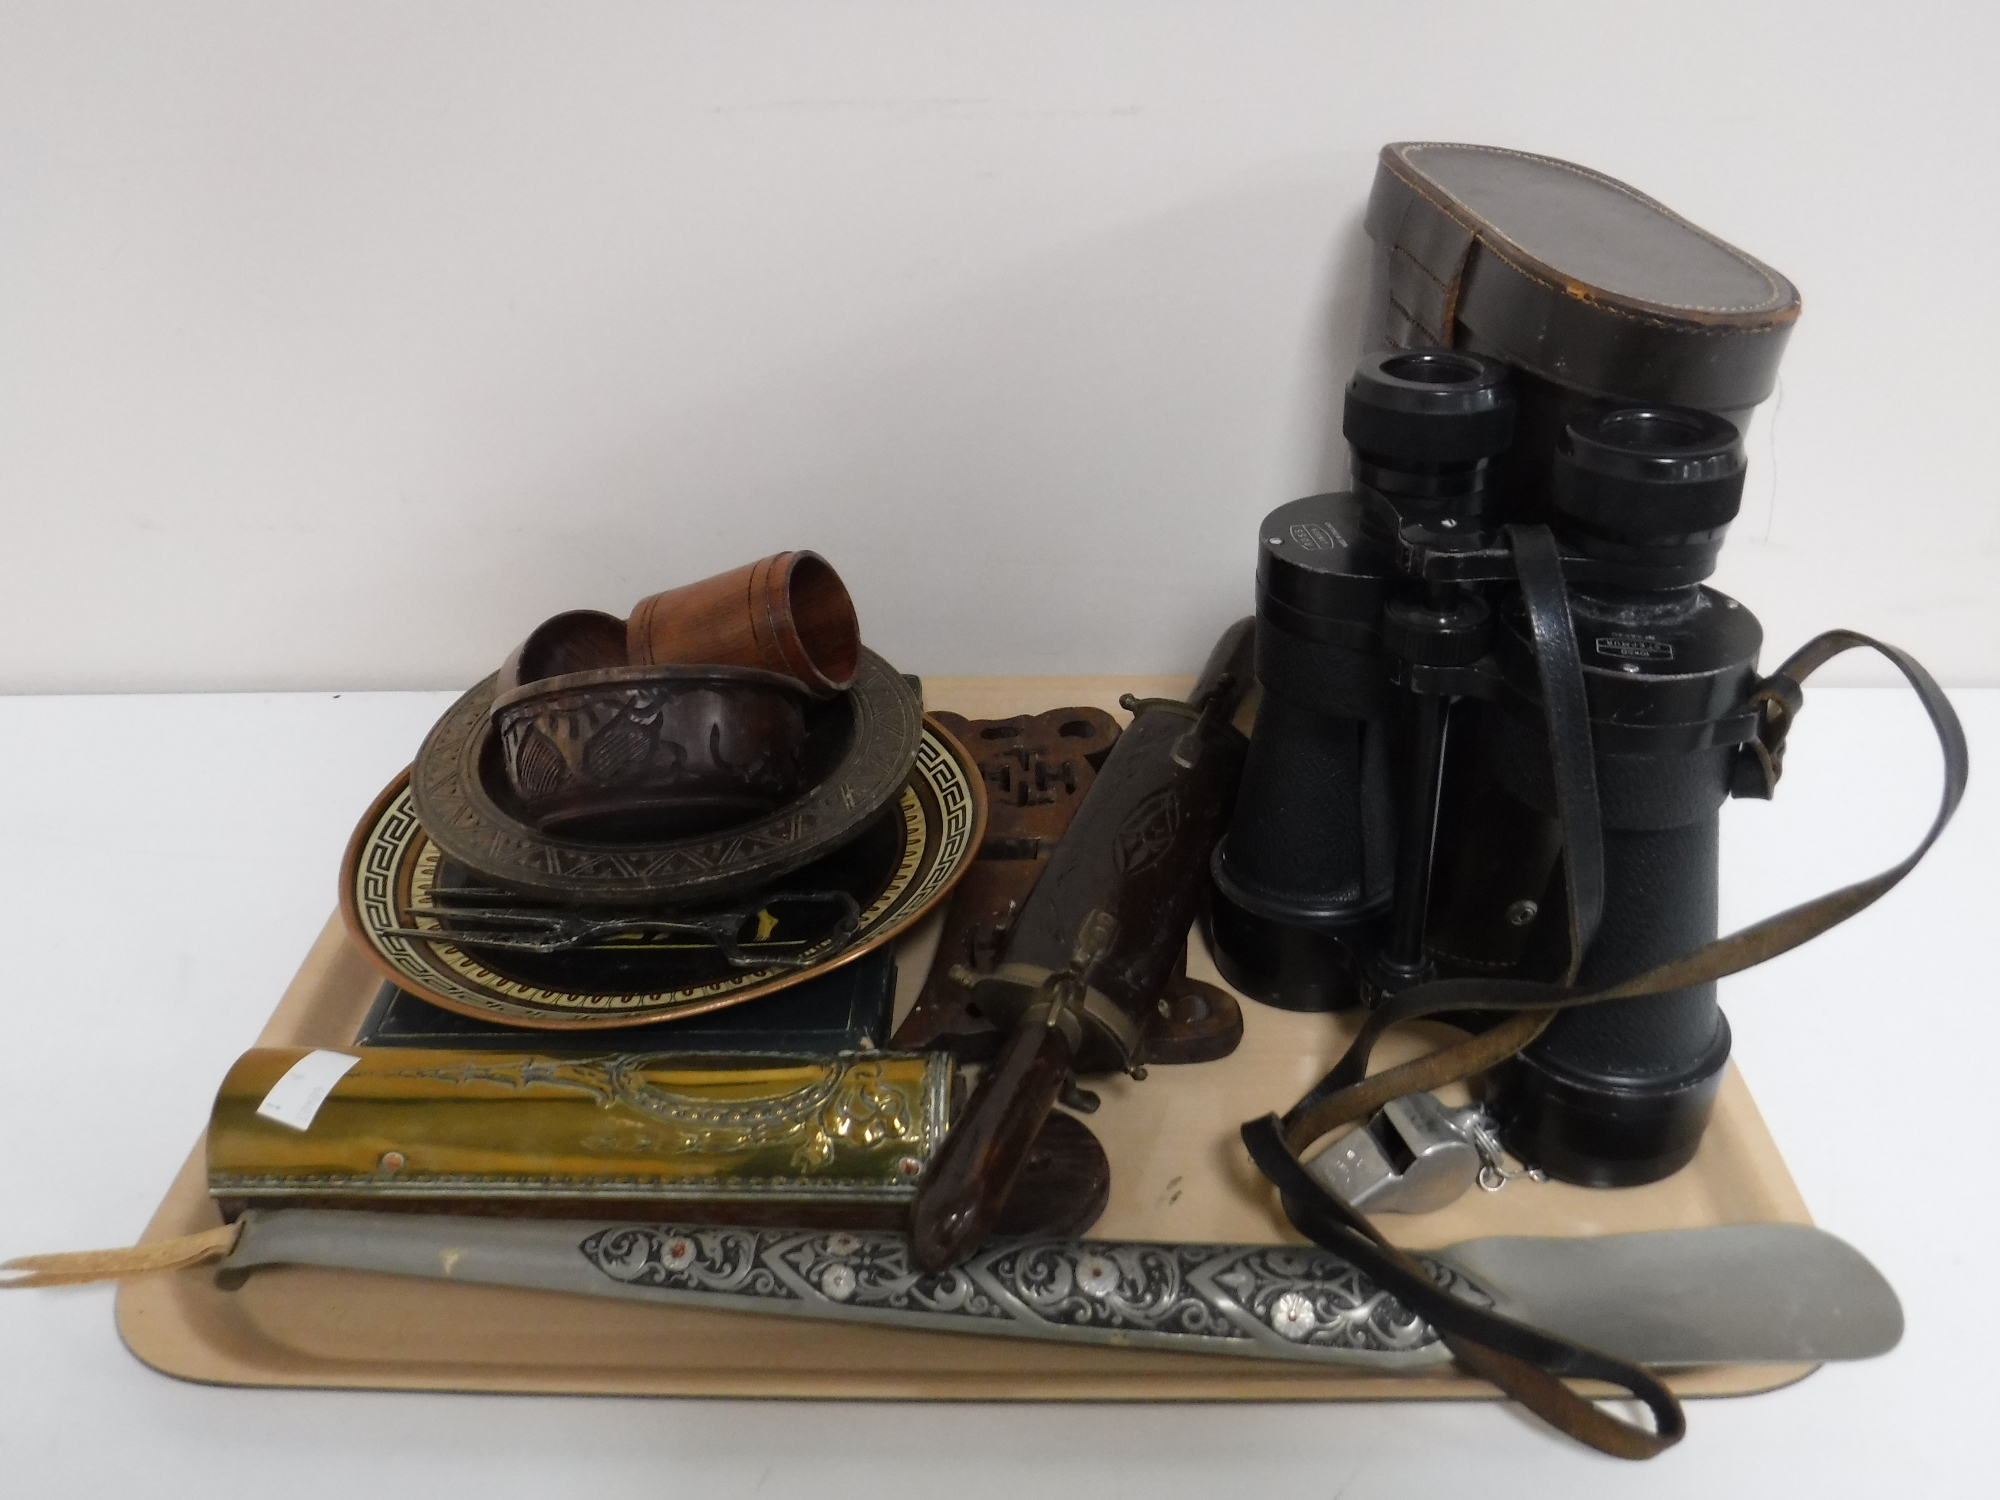 A tray of brass Art Nouveau wall bracket, shoe horn, Eastern knives in sheaths, wooden bowls,